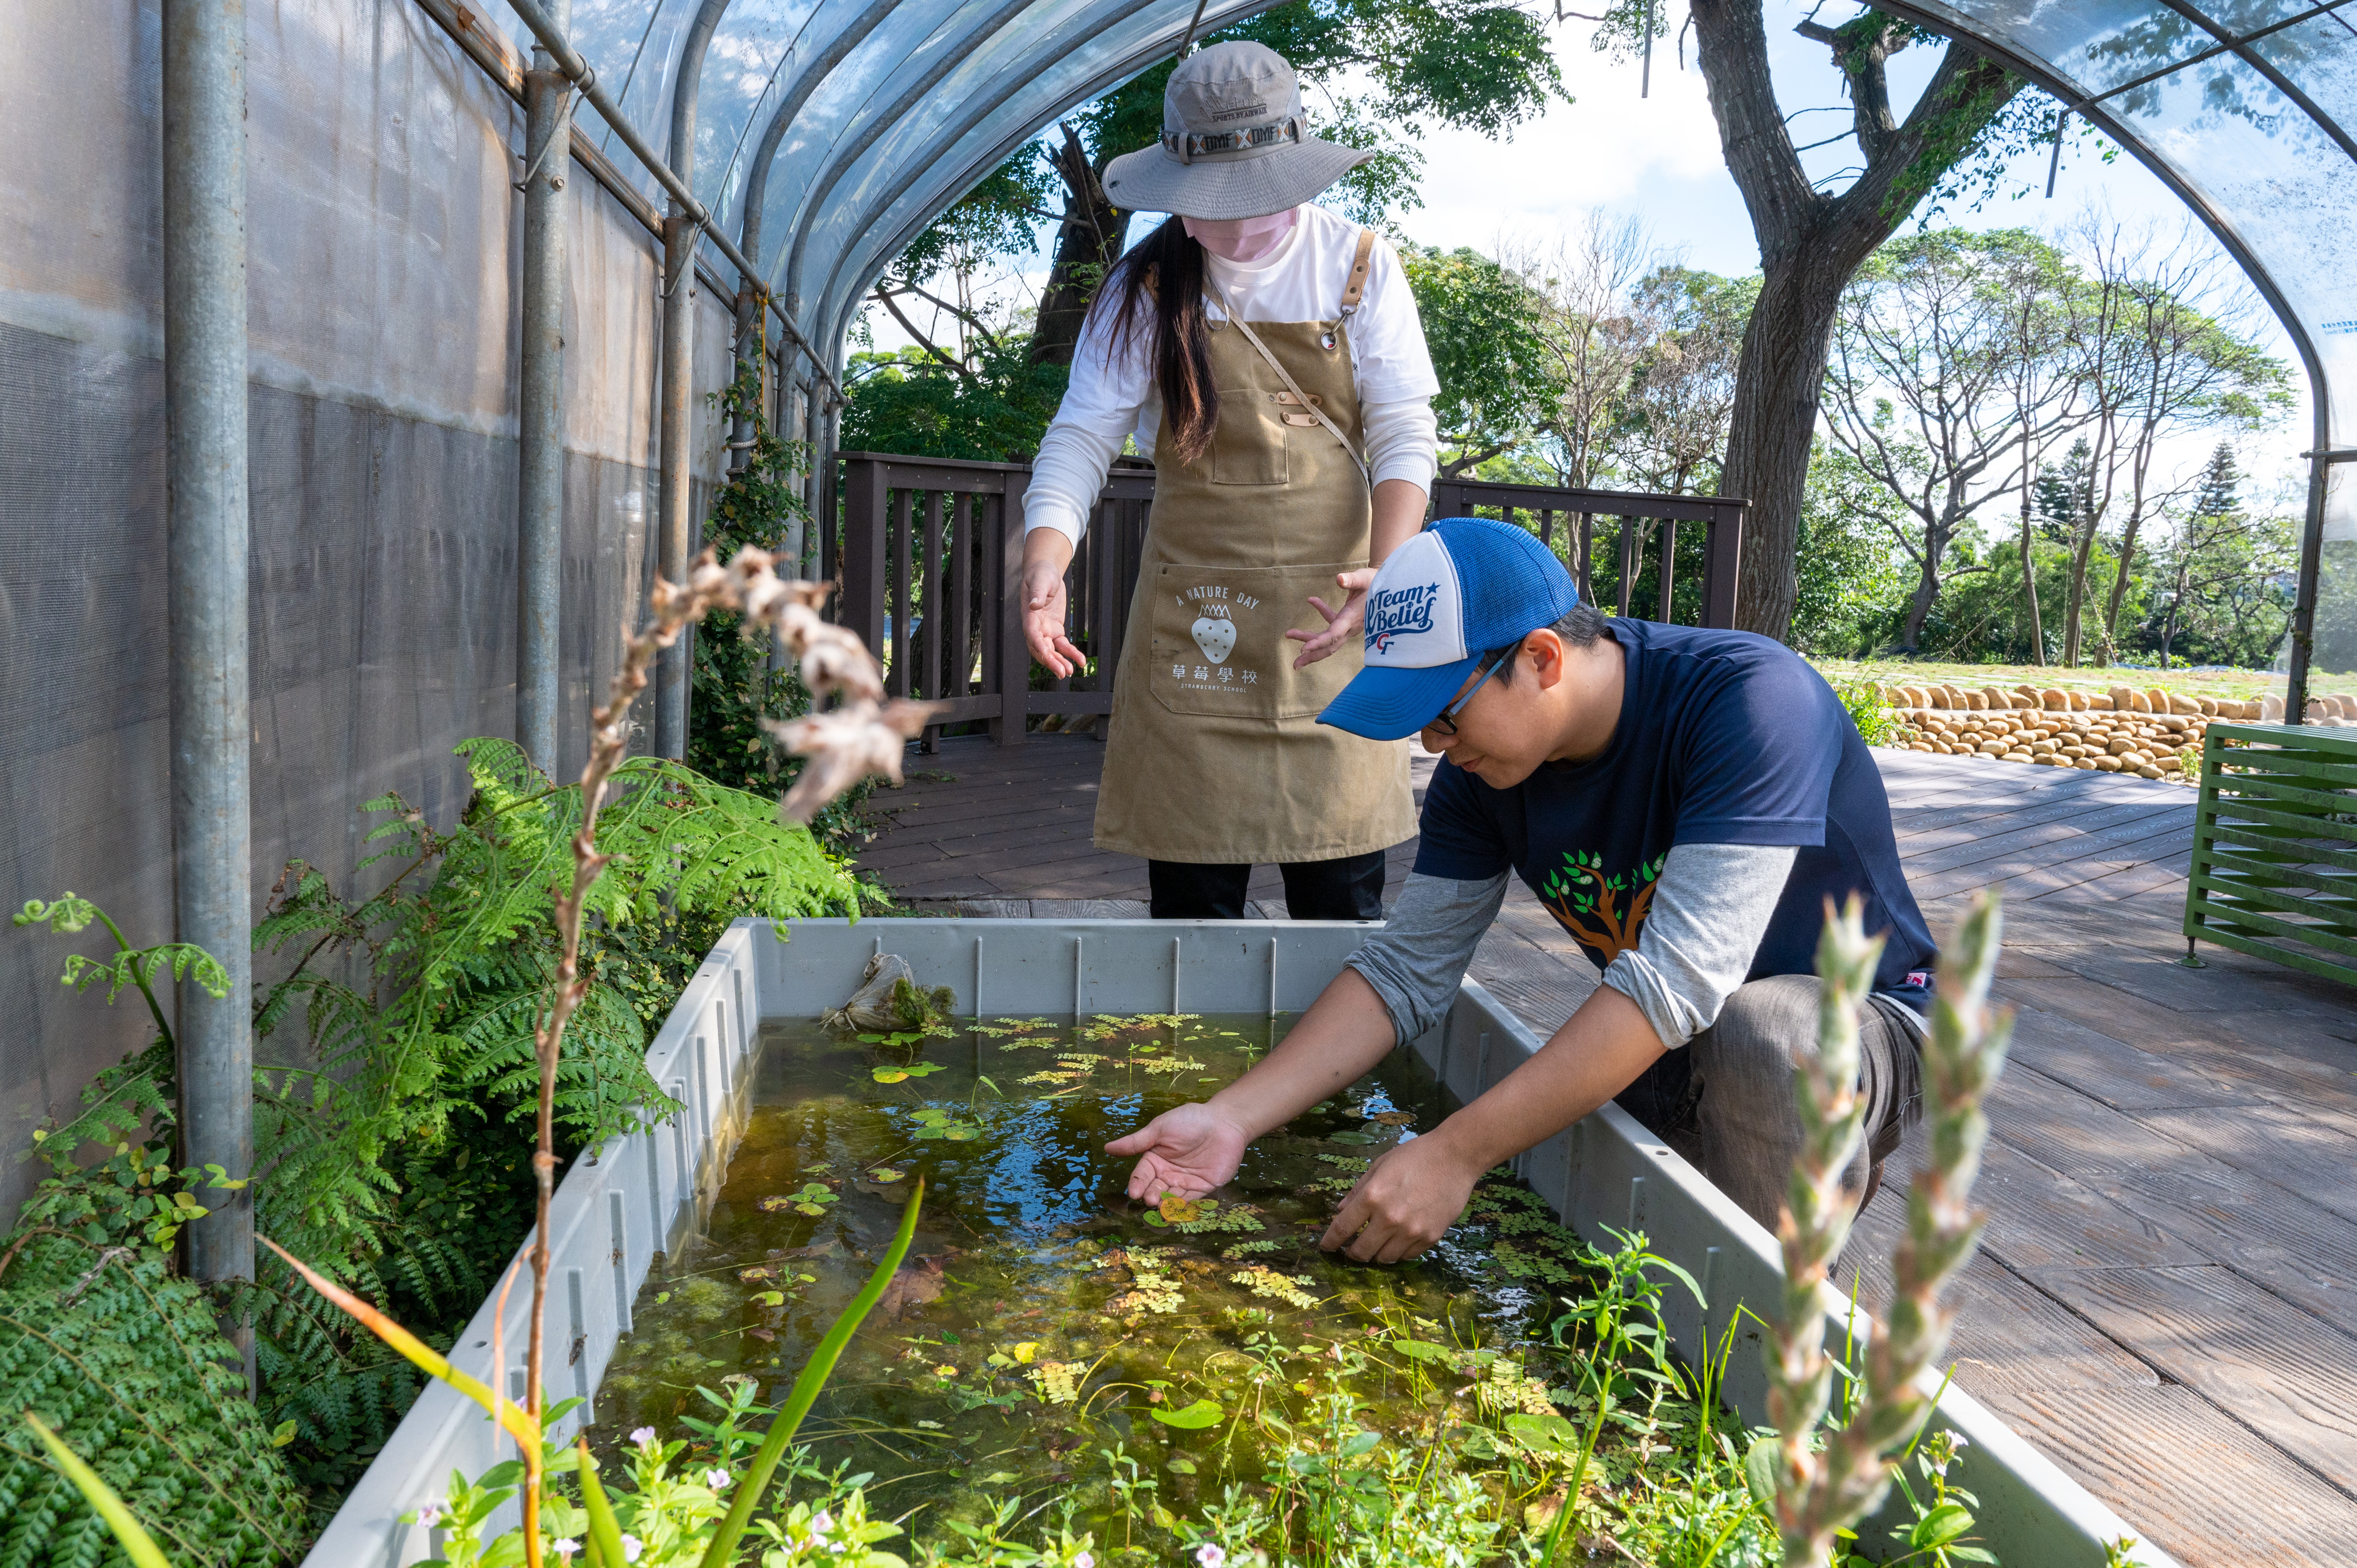 水生植物介紹跟復育也是園區非常棒的課程。